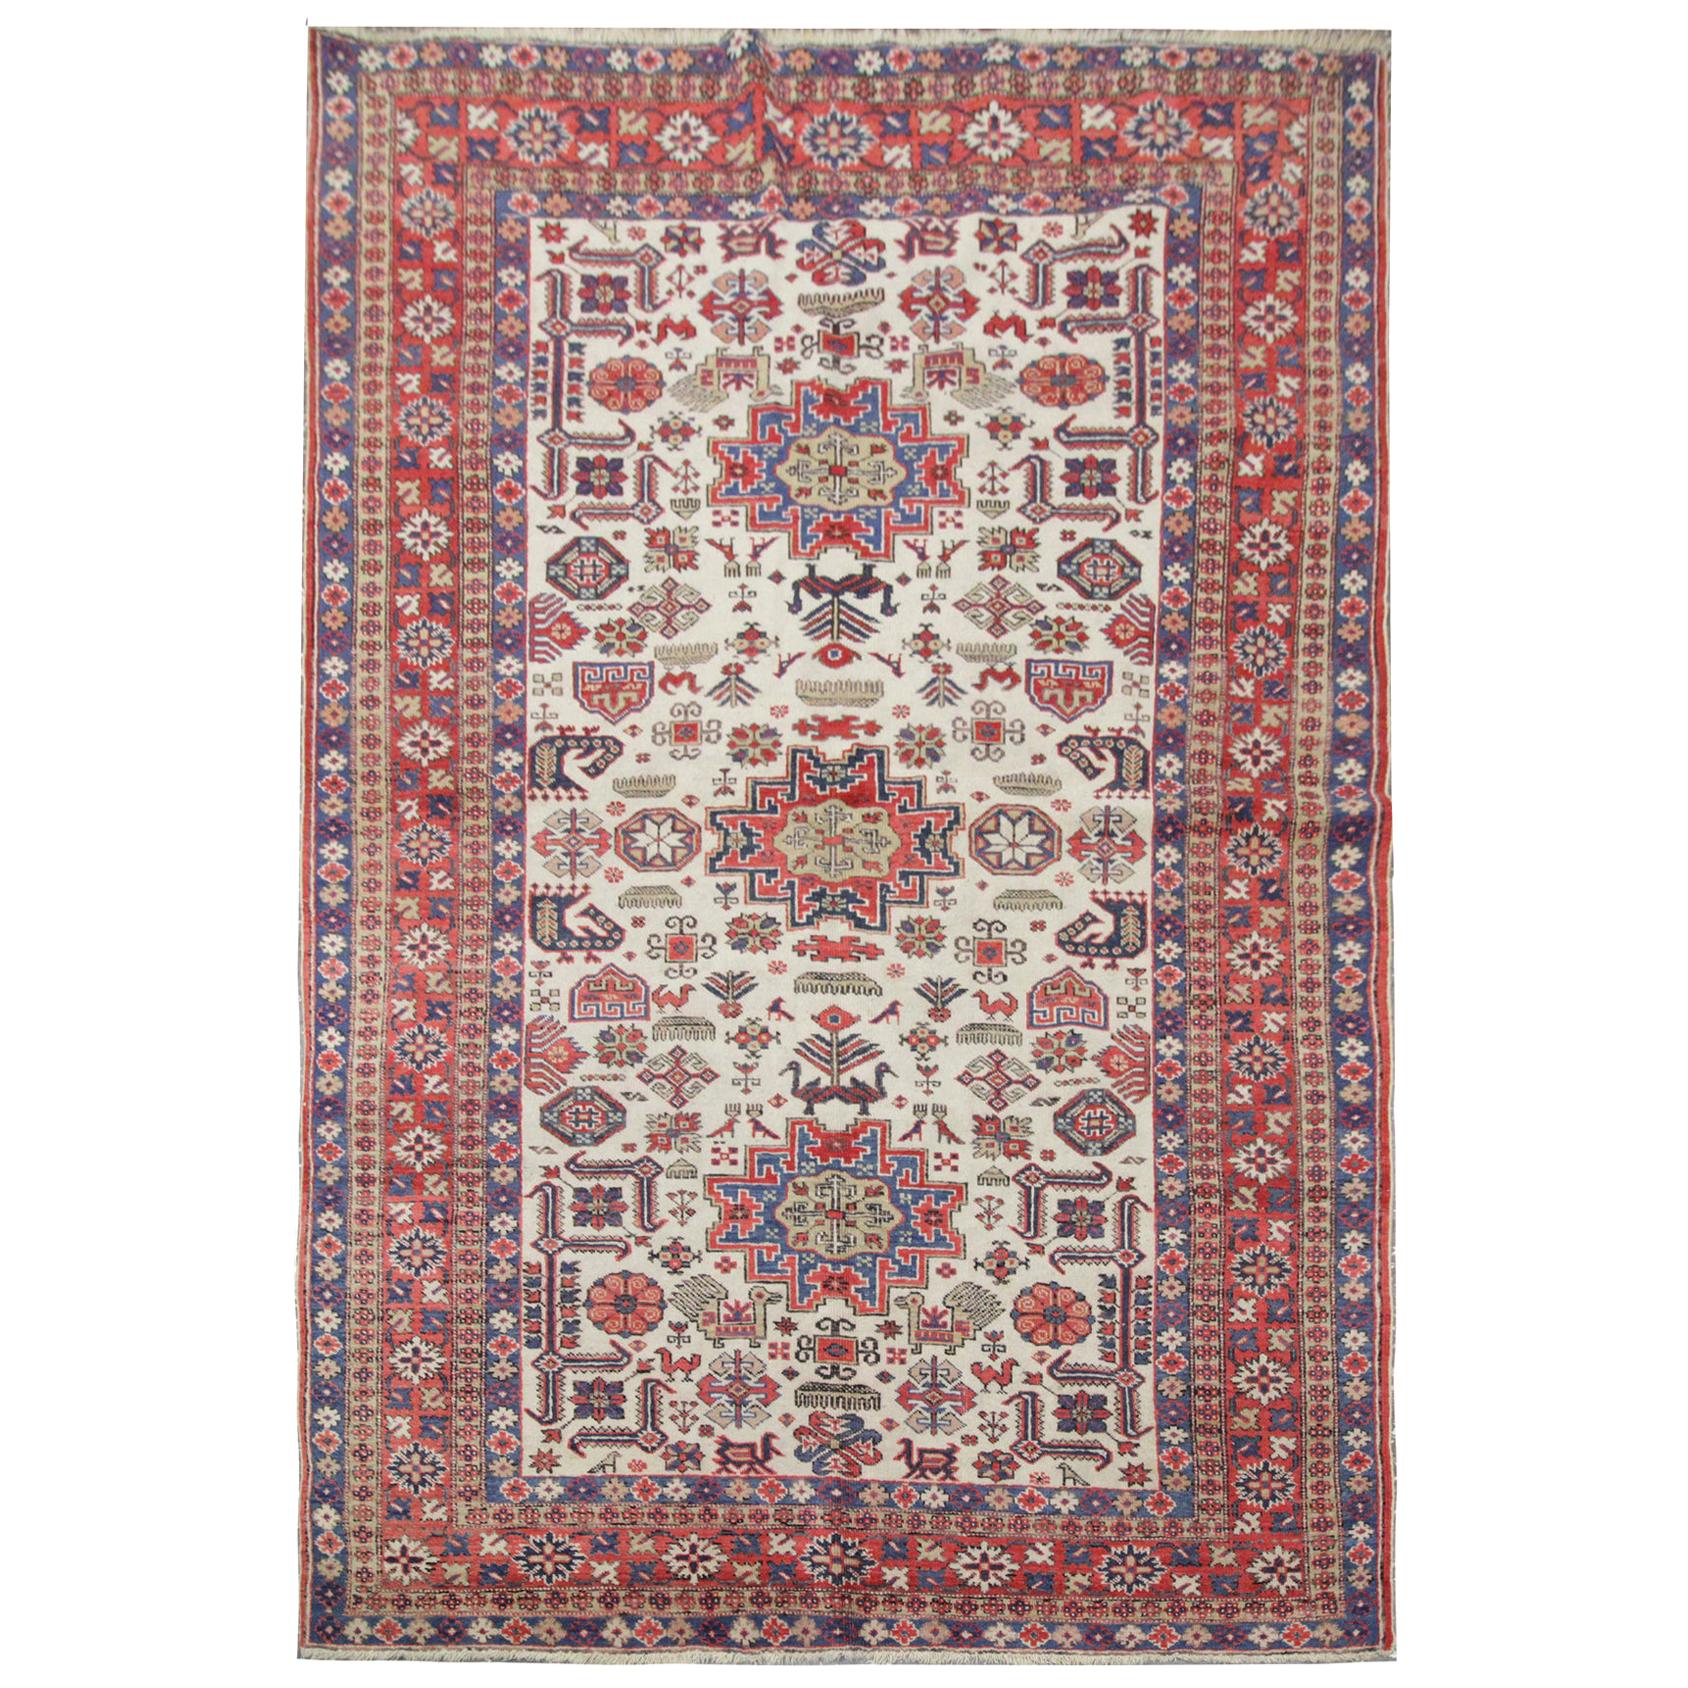 Vintage handgefertigte kaukasische Teppich:: mehrfarbige Wolle Teppich für Wohnzimmer